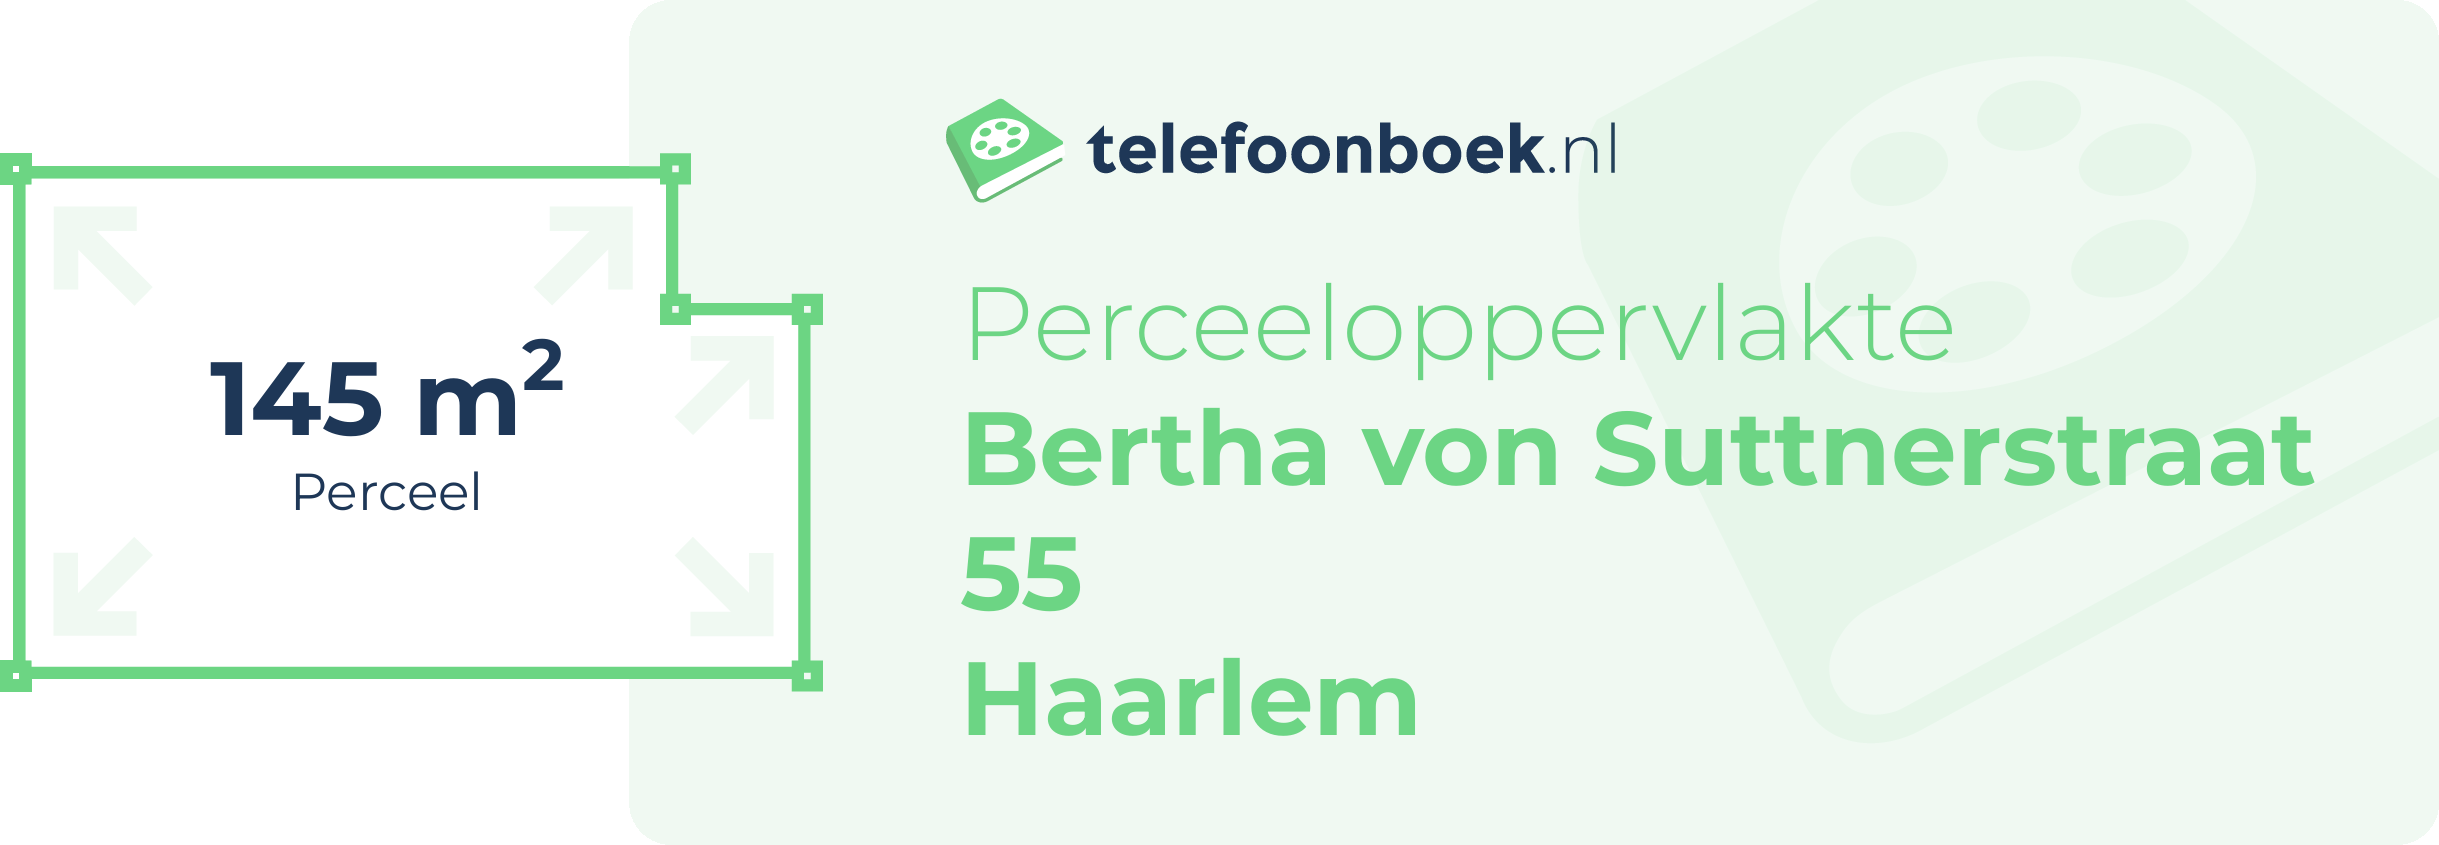 Perceeloppervlakte Bertha Von Suttnerstraat 55 Haarlem